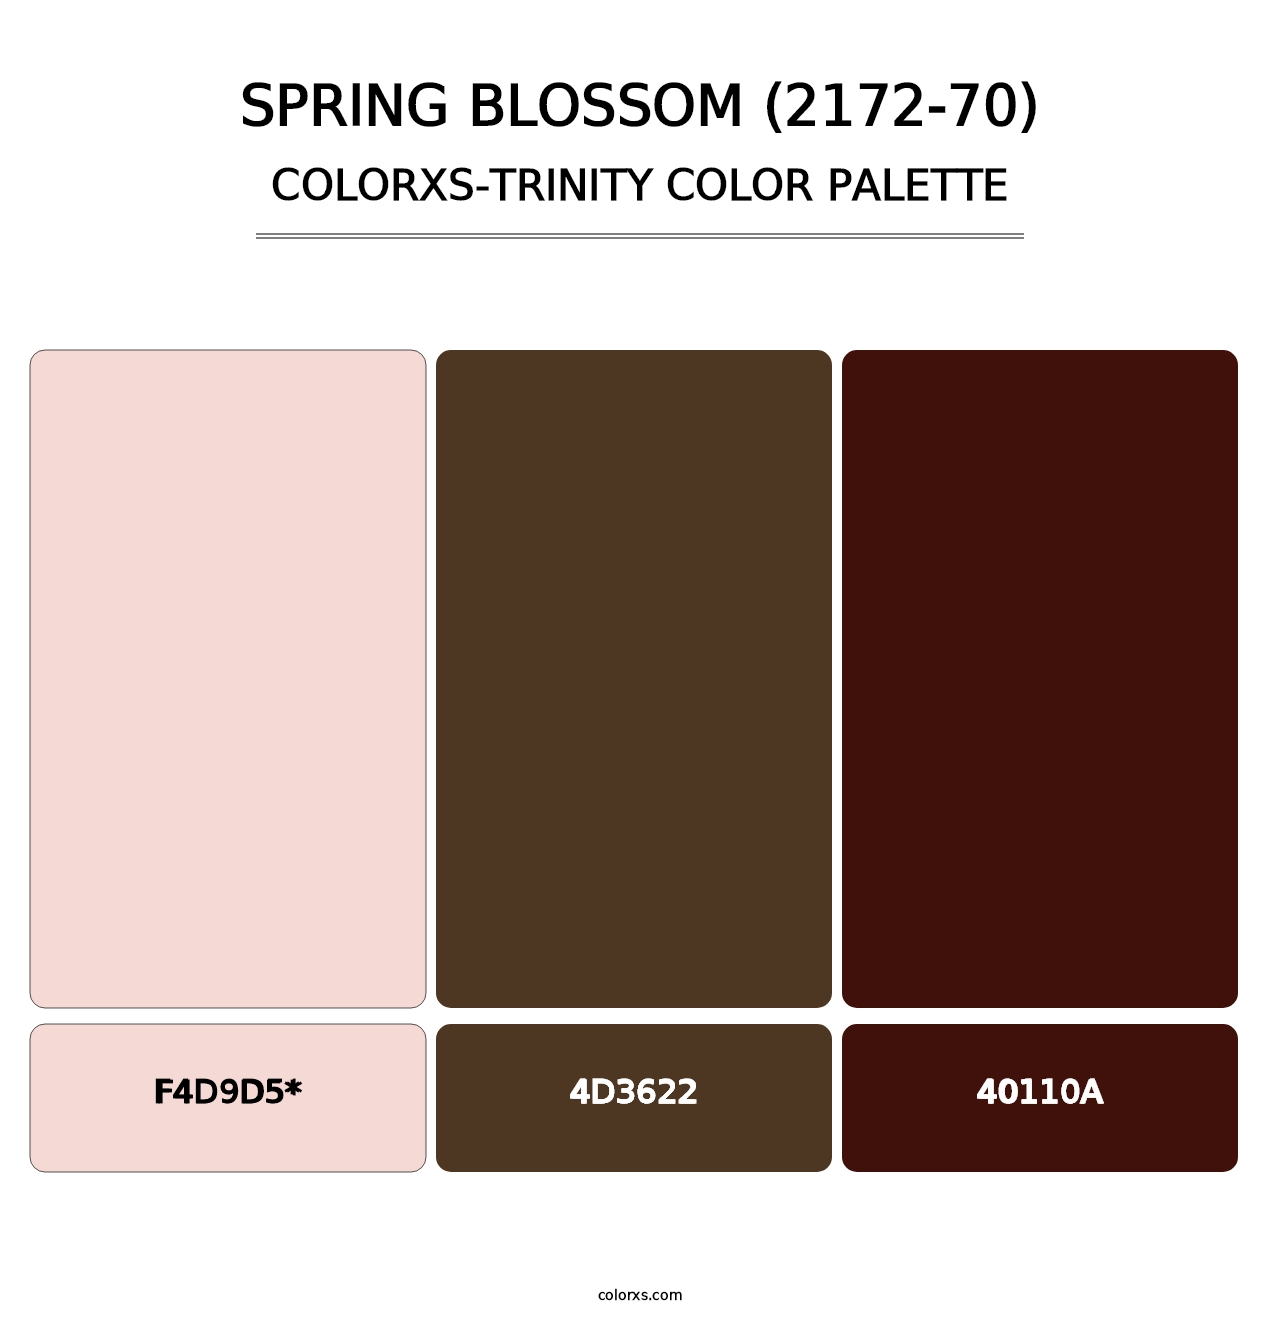 Spring Blossom (2172-70) - Colorxs Trinity Palette